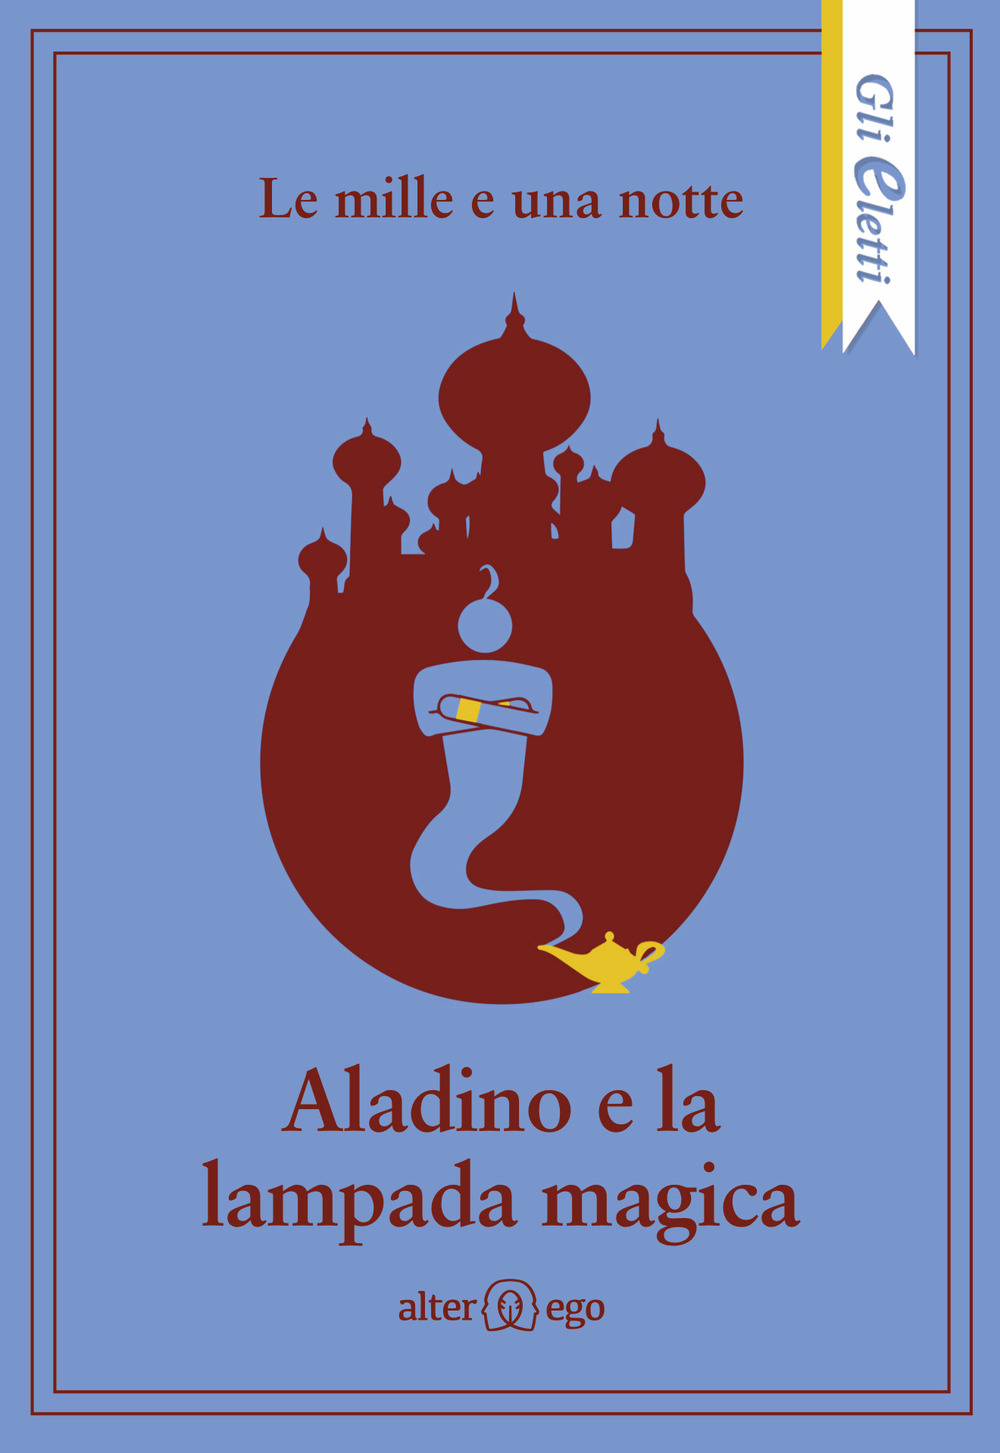 Le mille e una notte: Aladino e la lampada magica